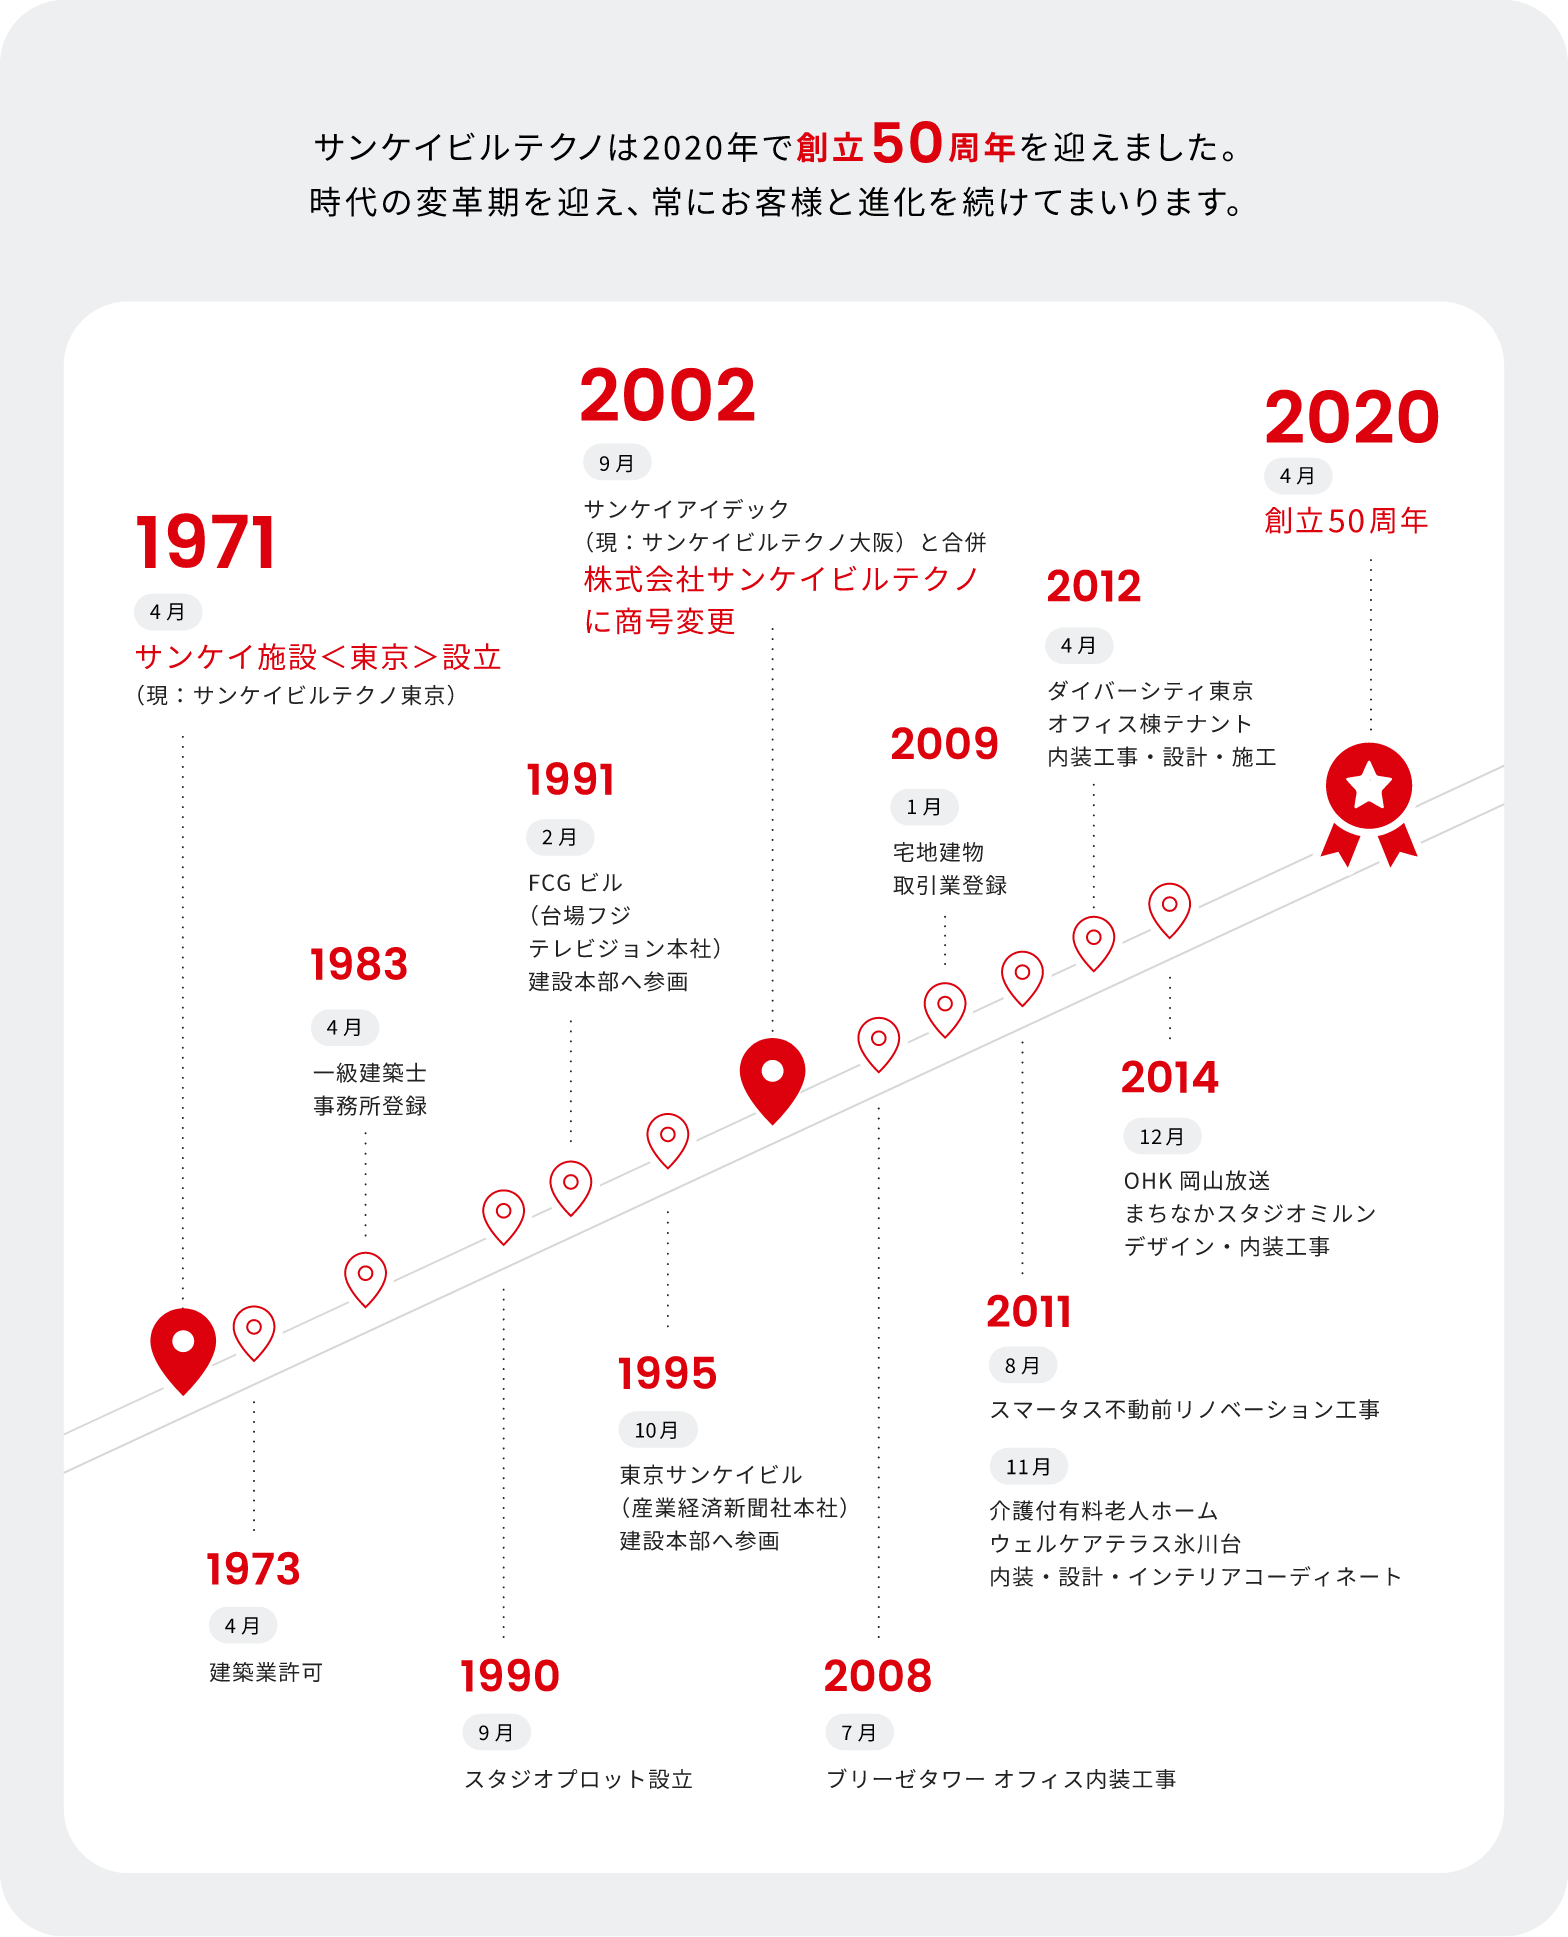 サンケイビルテクノは2020年で創立50周年を迎えました。時代の変革期を迎え、常にお客様と進化を続けて参ります。1971年 サンケイ施設＜東京＞設立 → 2002年 株式会社サンケイビルテクノに商号変更 → 2020年 創立50周年